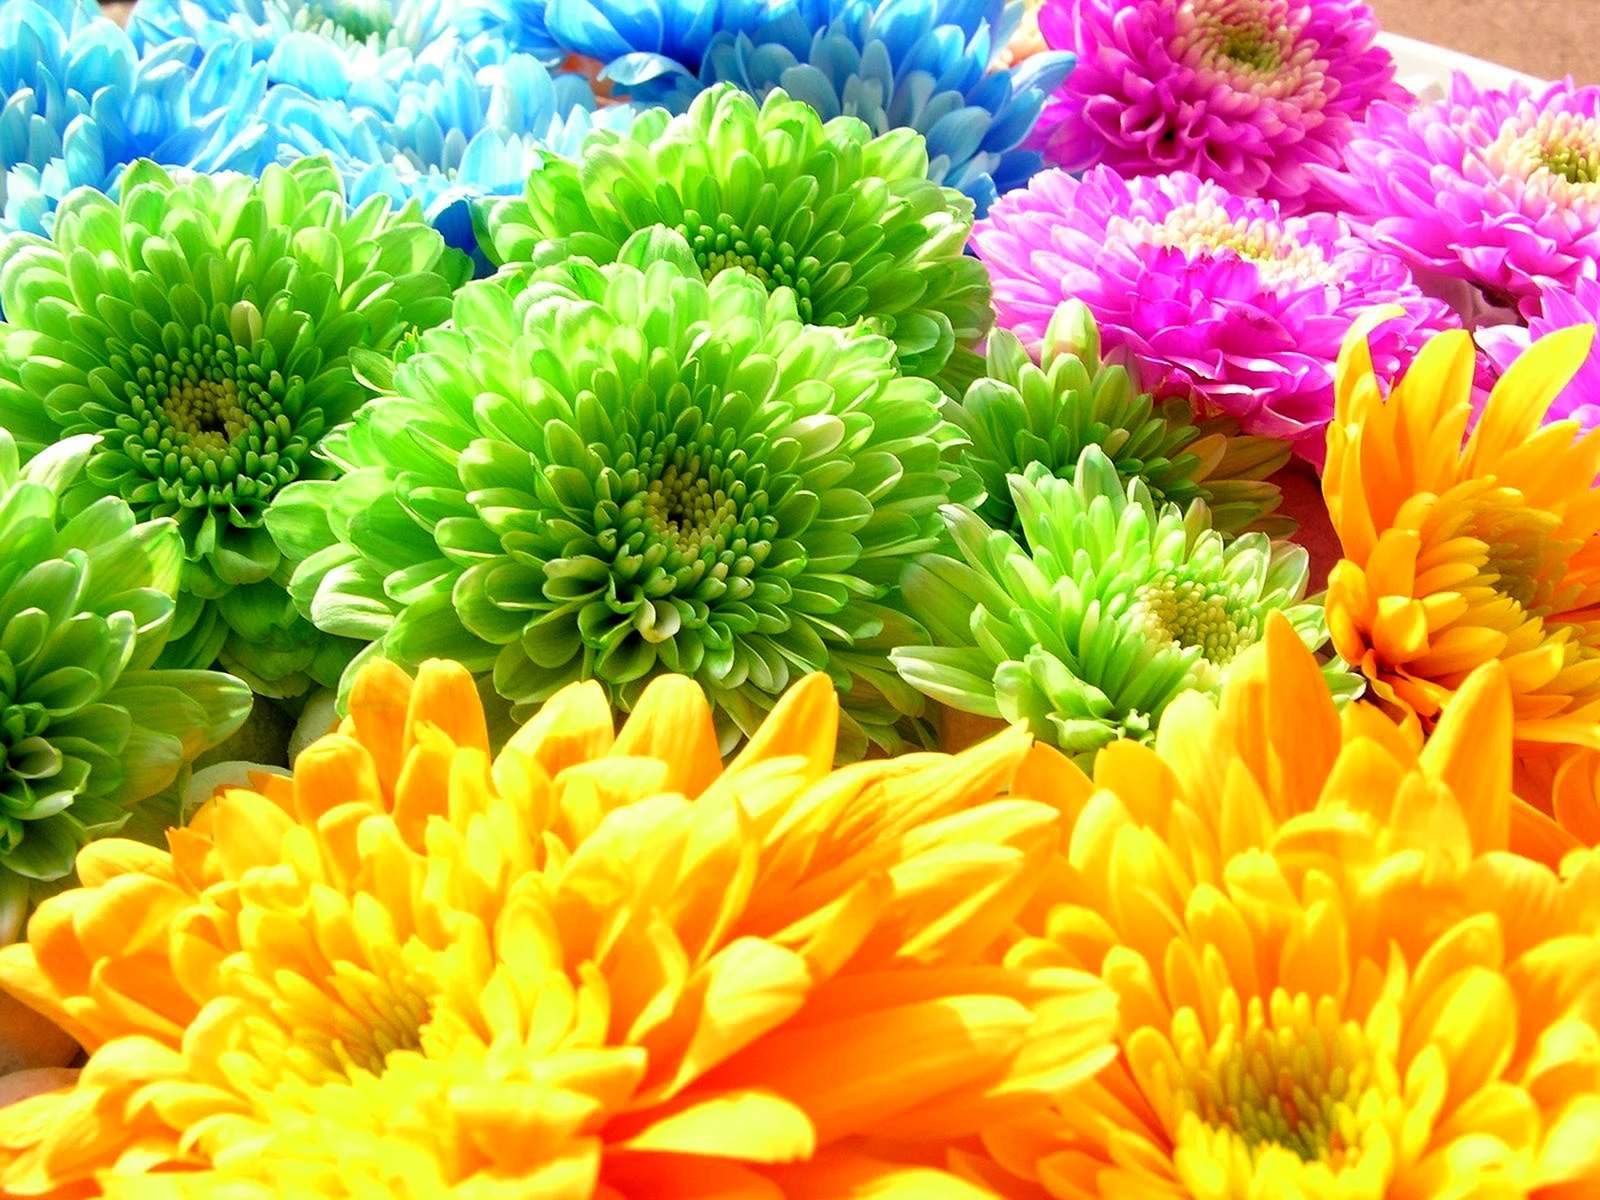 Хризантемы разноцветные